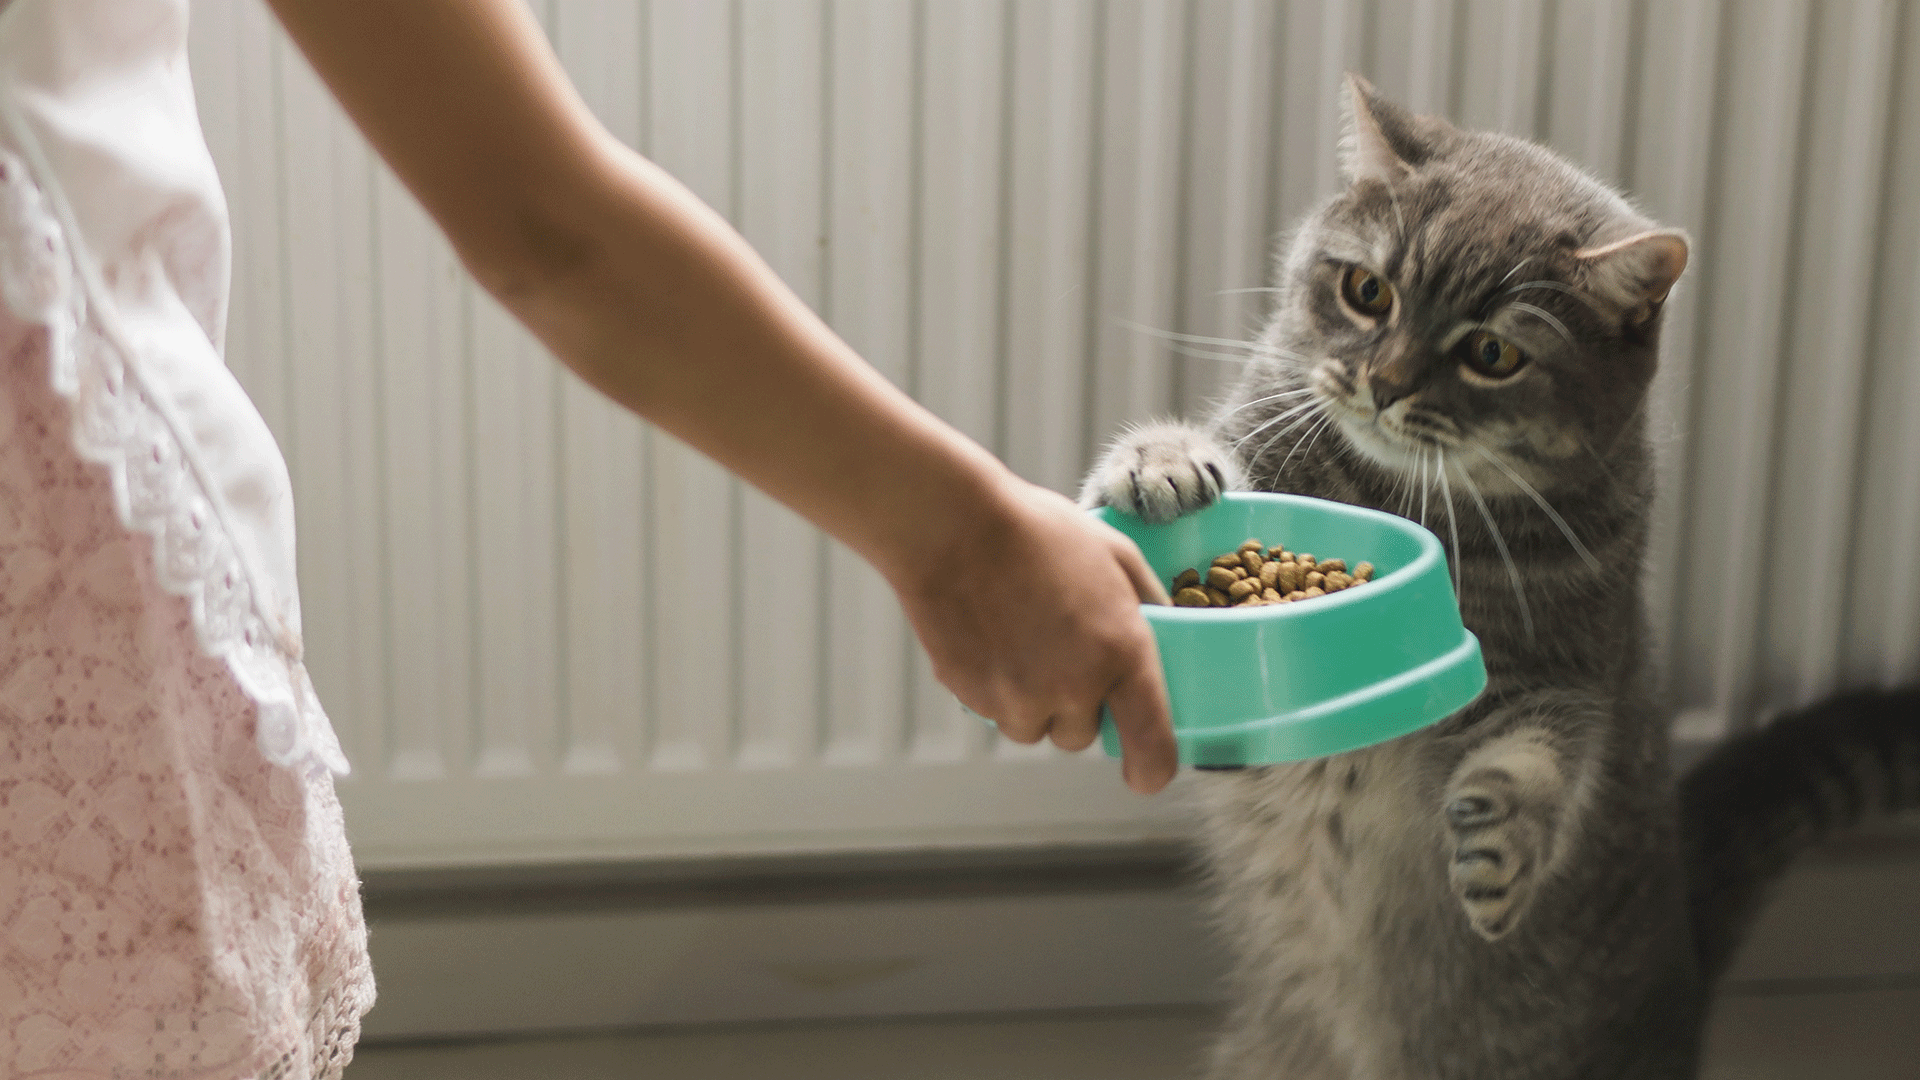 É preciso alguns cuidados com a vasilha de comida do gato